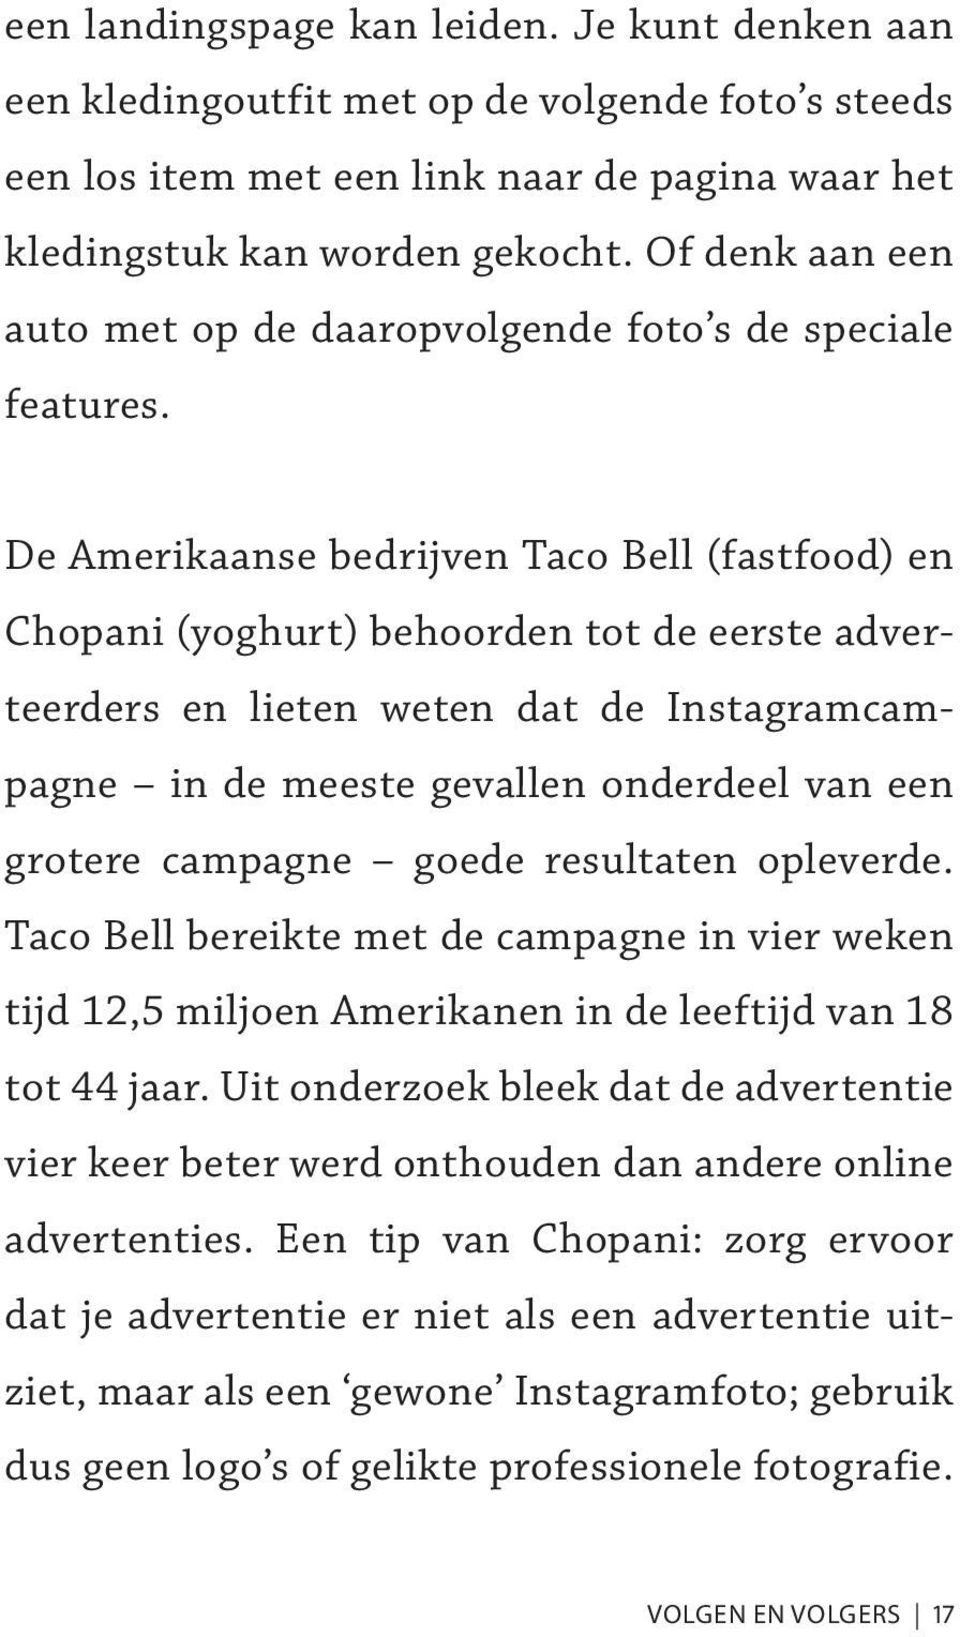 De Amerikaanse bedrijven Taco Bell (fastfood) en Chopani (yoghurt) behoorden tot de eerste adverteerders en lieten weten dat de Instagramcampagne in de meeste gevallen onderdeel van een grotere